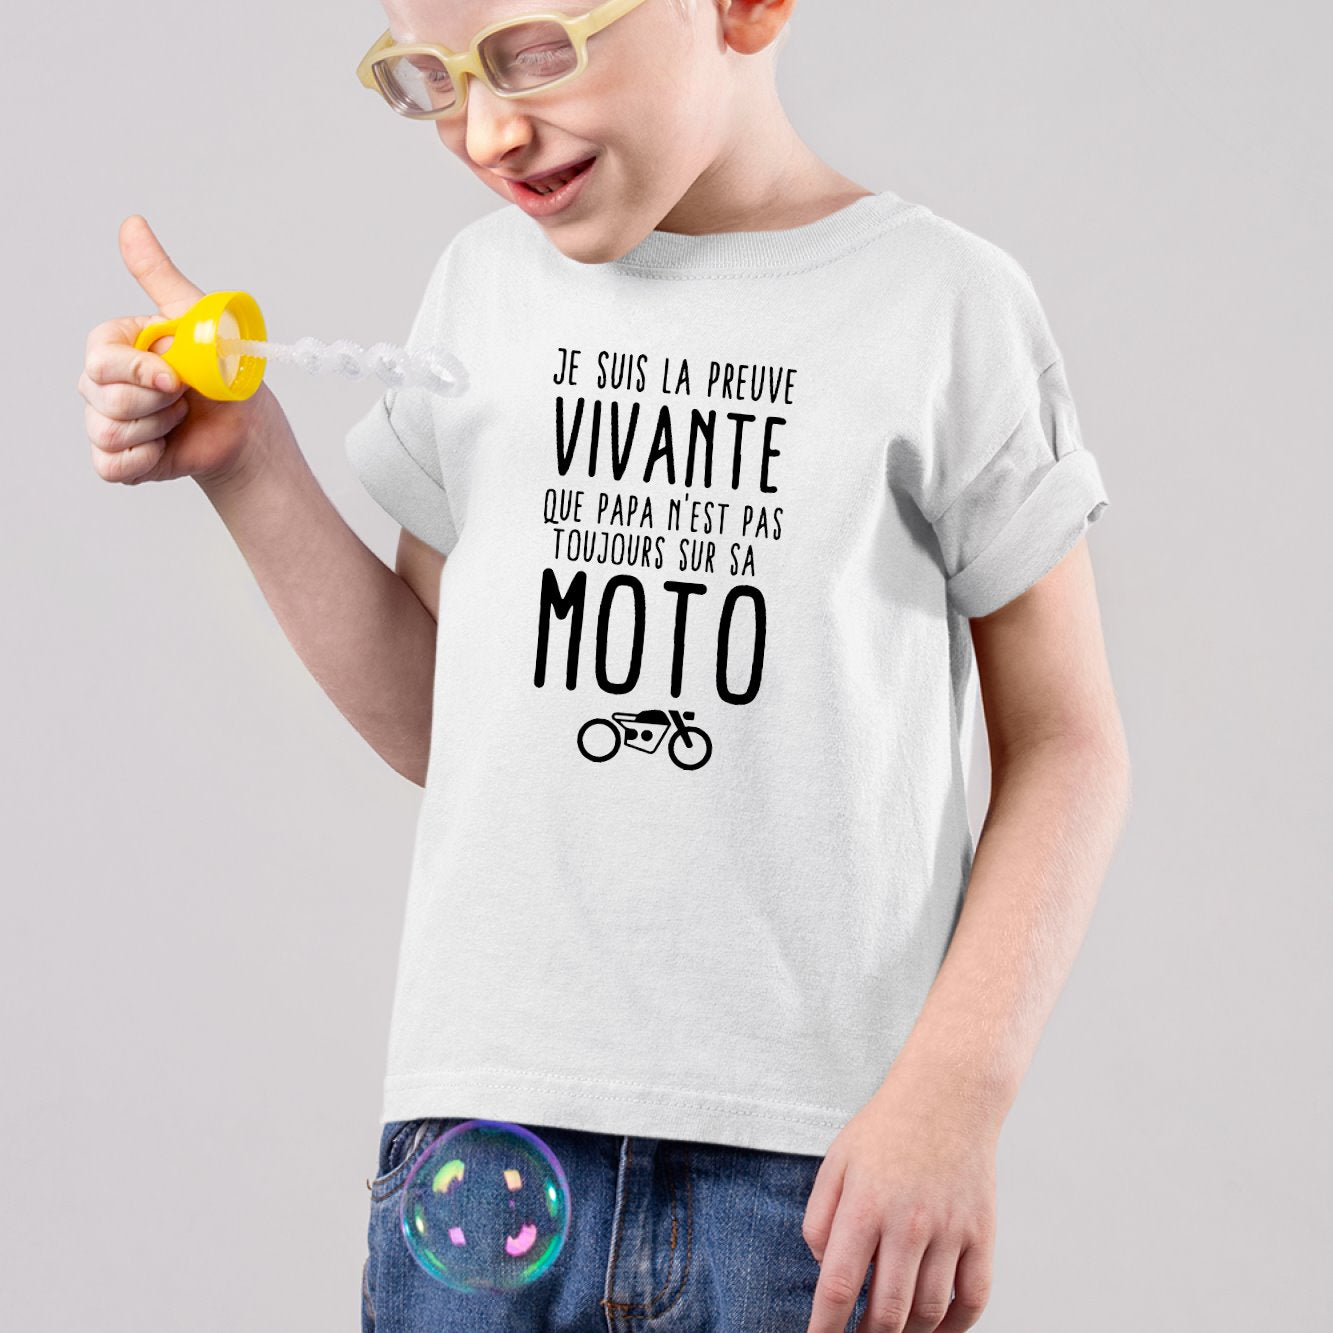 T-Shirt Enfant Preuve que papa n'est pas toujours sur sa moto Blanc